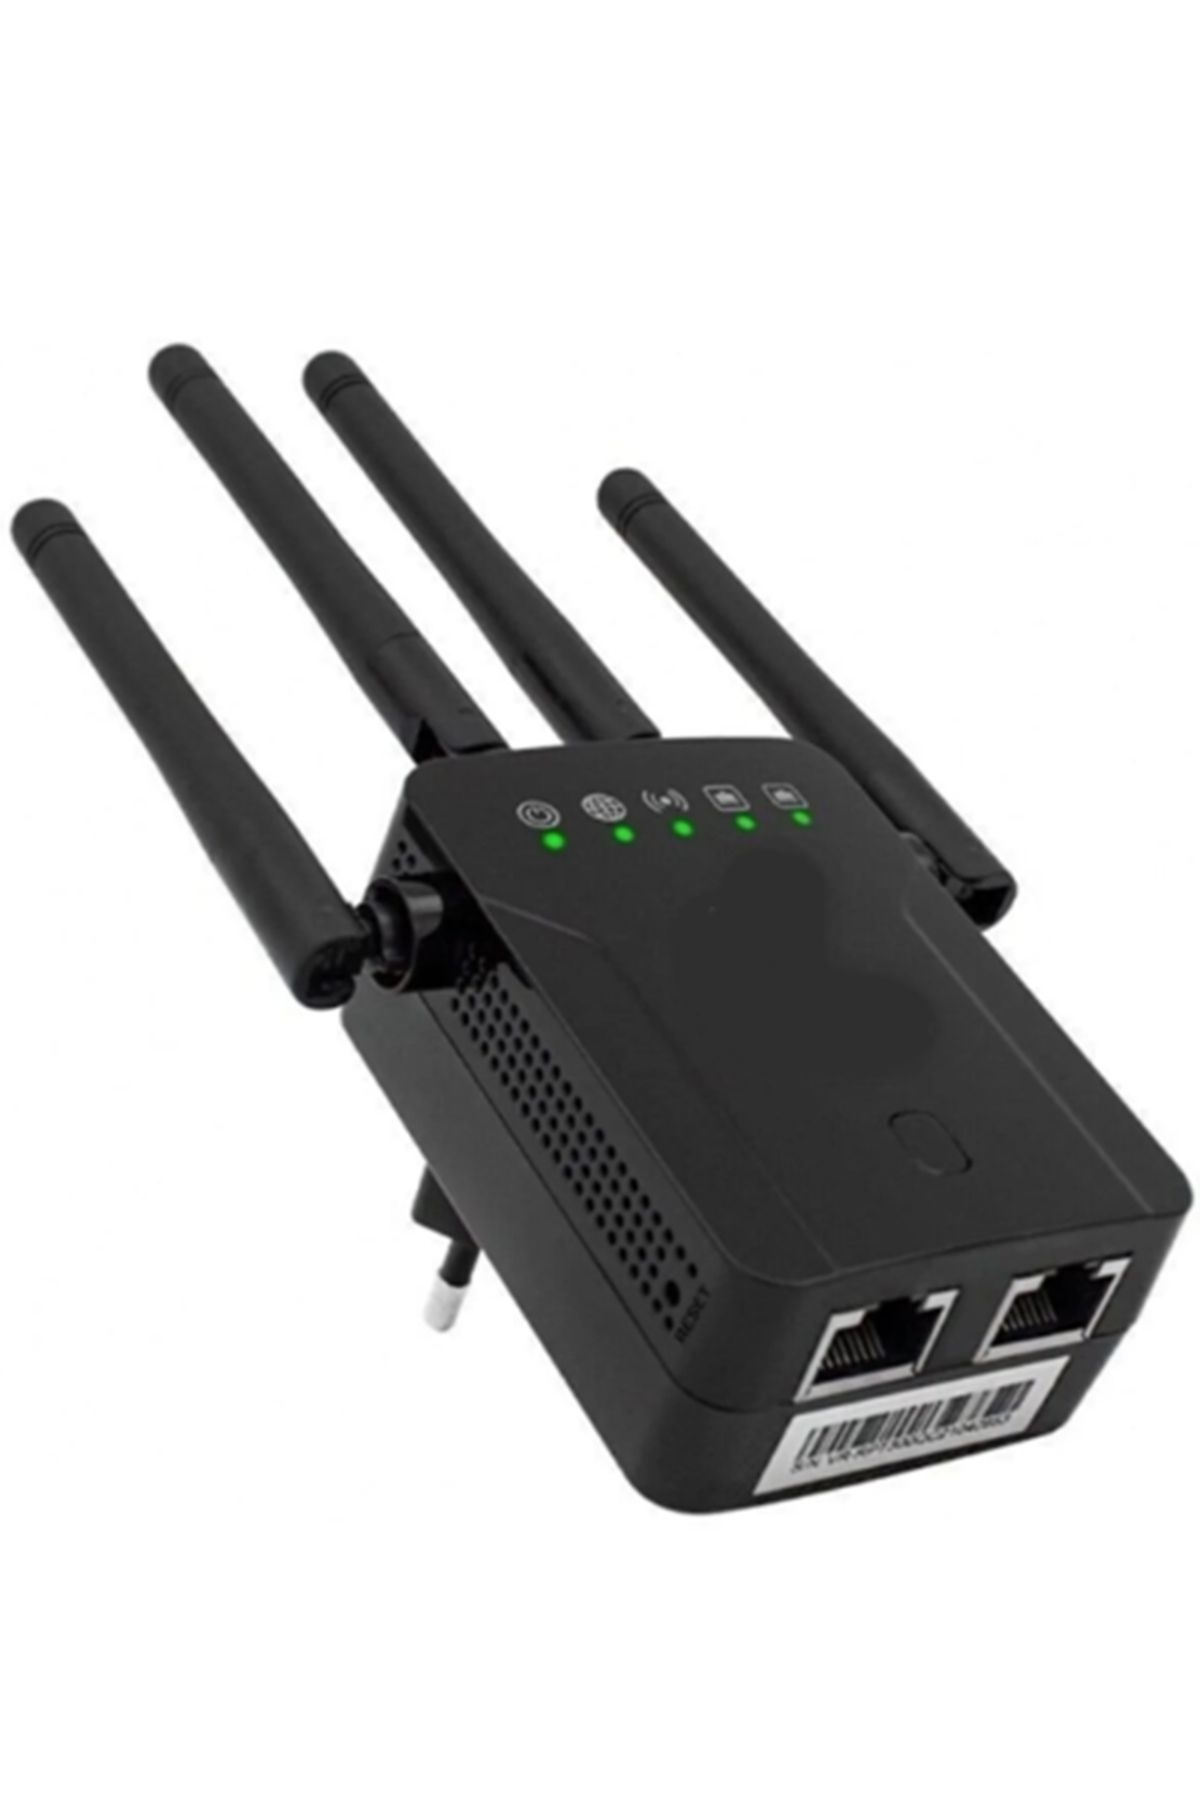 gaman 4 Antenli 300mbps Wifi Repeater Kablosuz Sinyal Güçlendirici Access Point-tekrarlayıcı